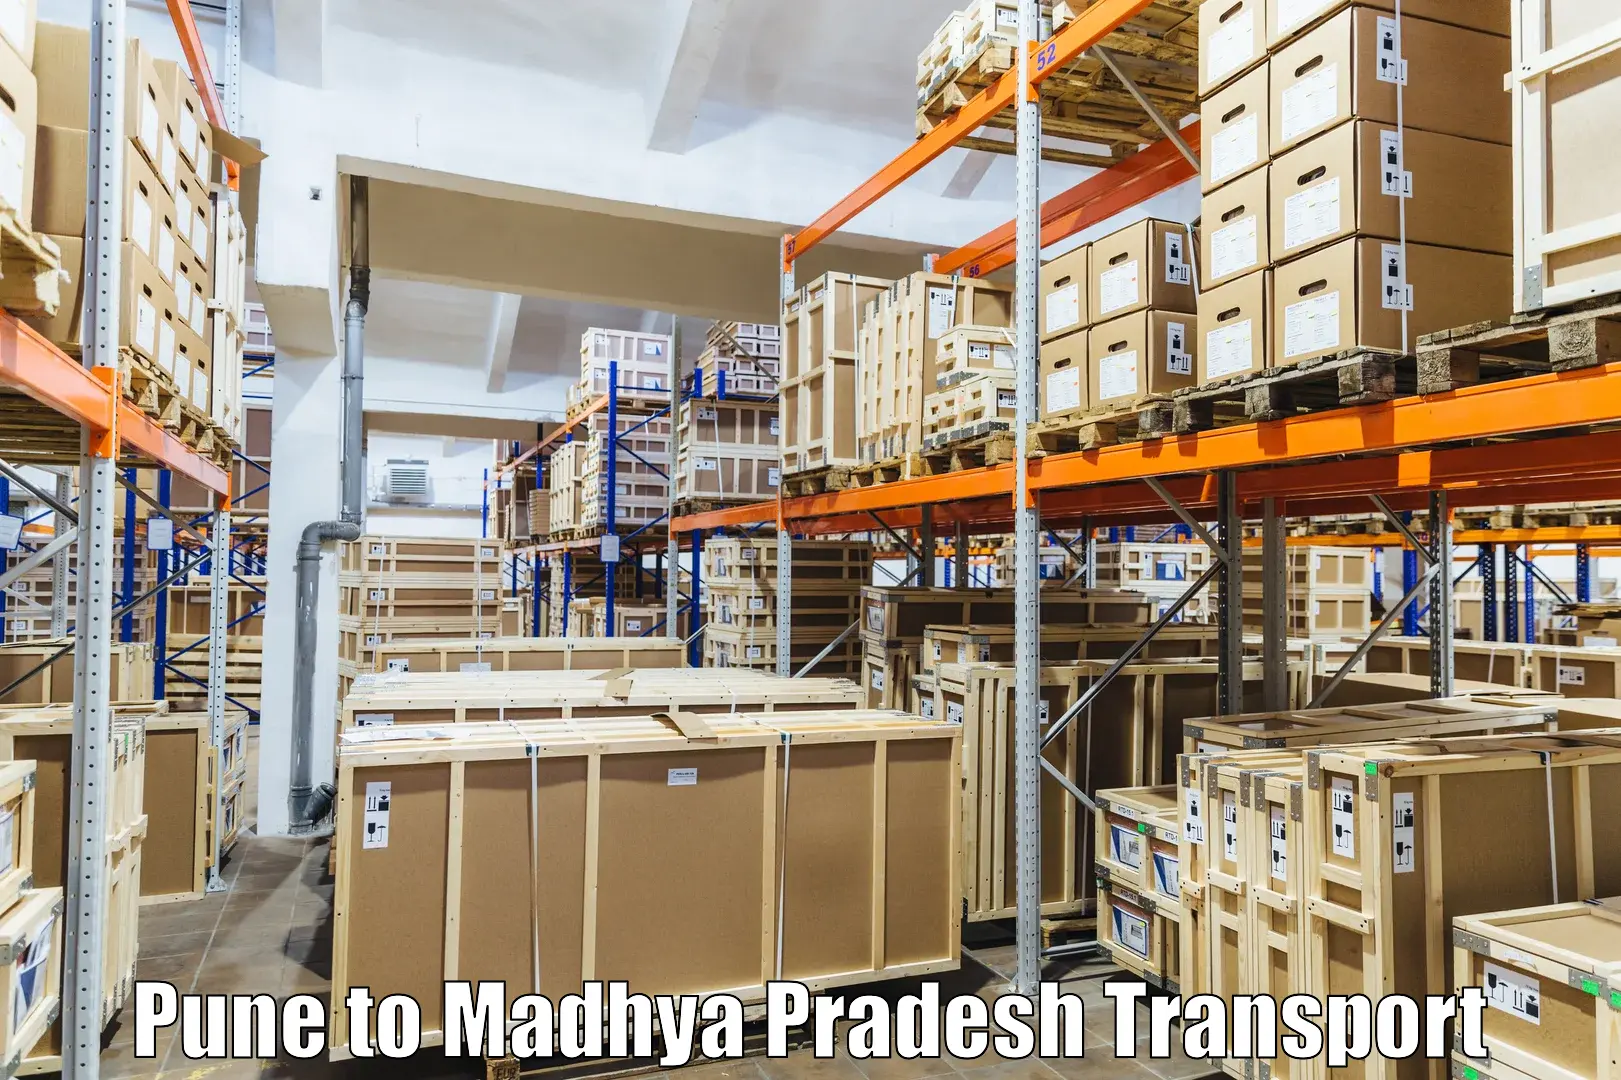 Vehicle parcel service Pune to Maheshwar